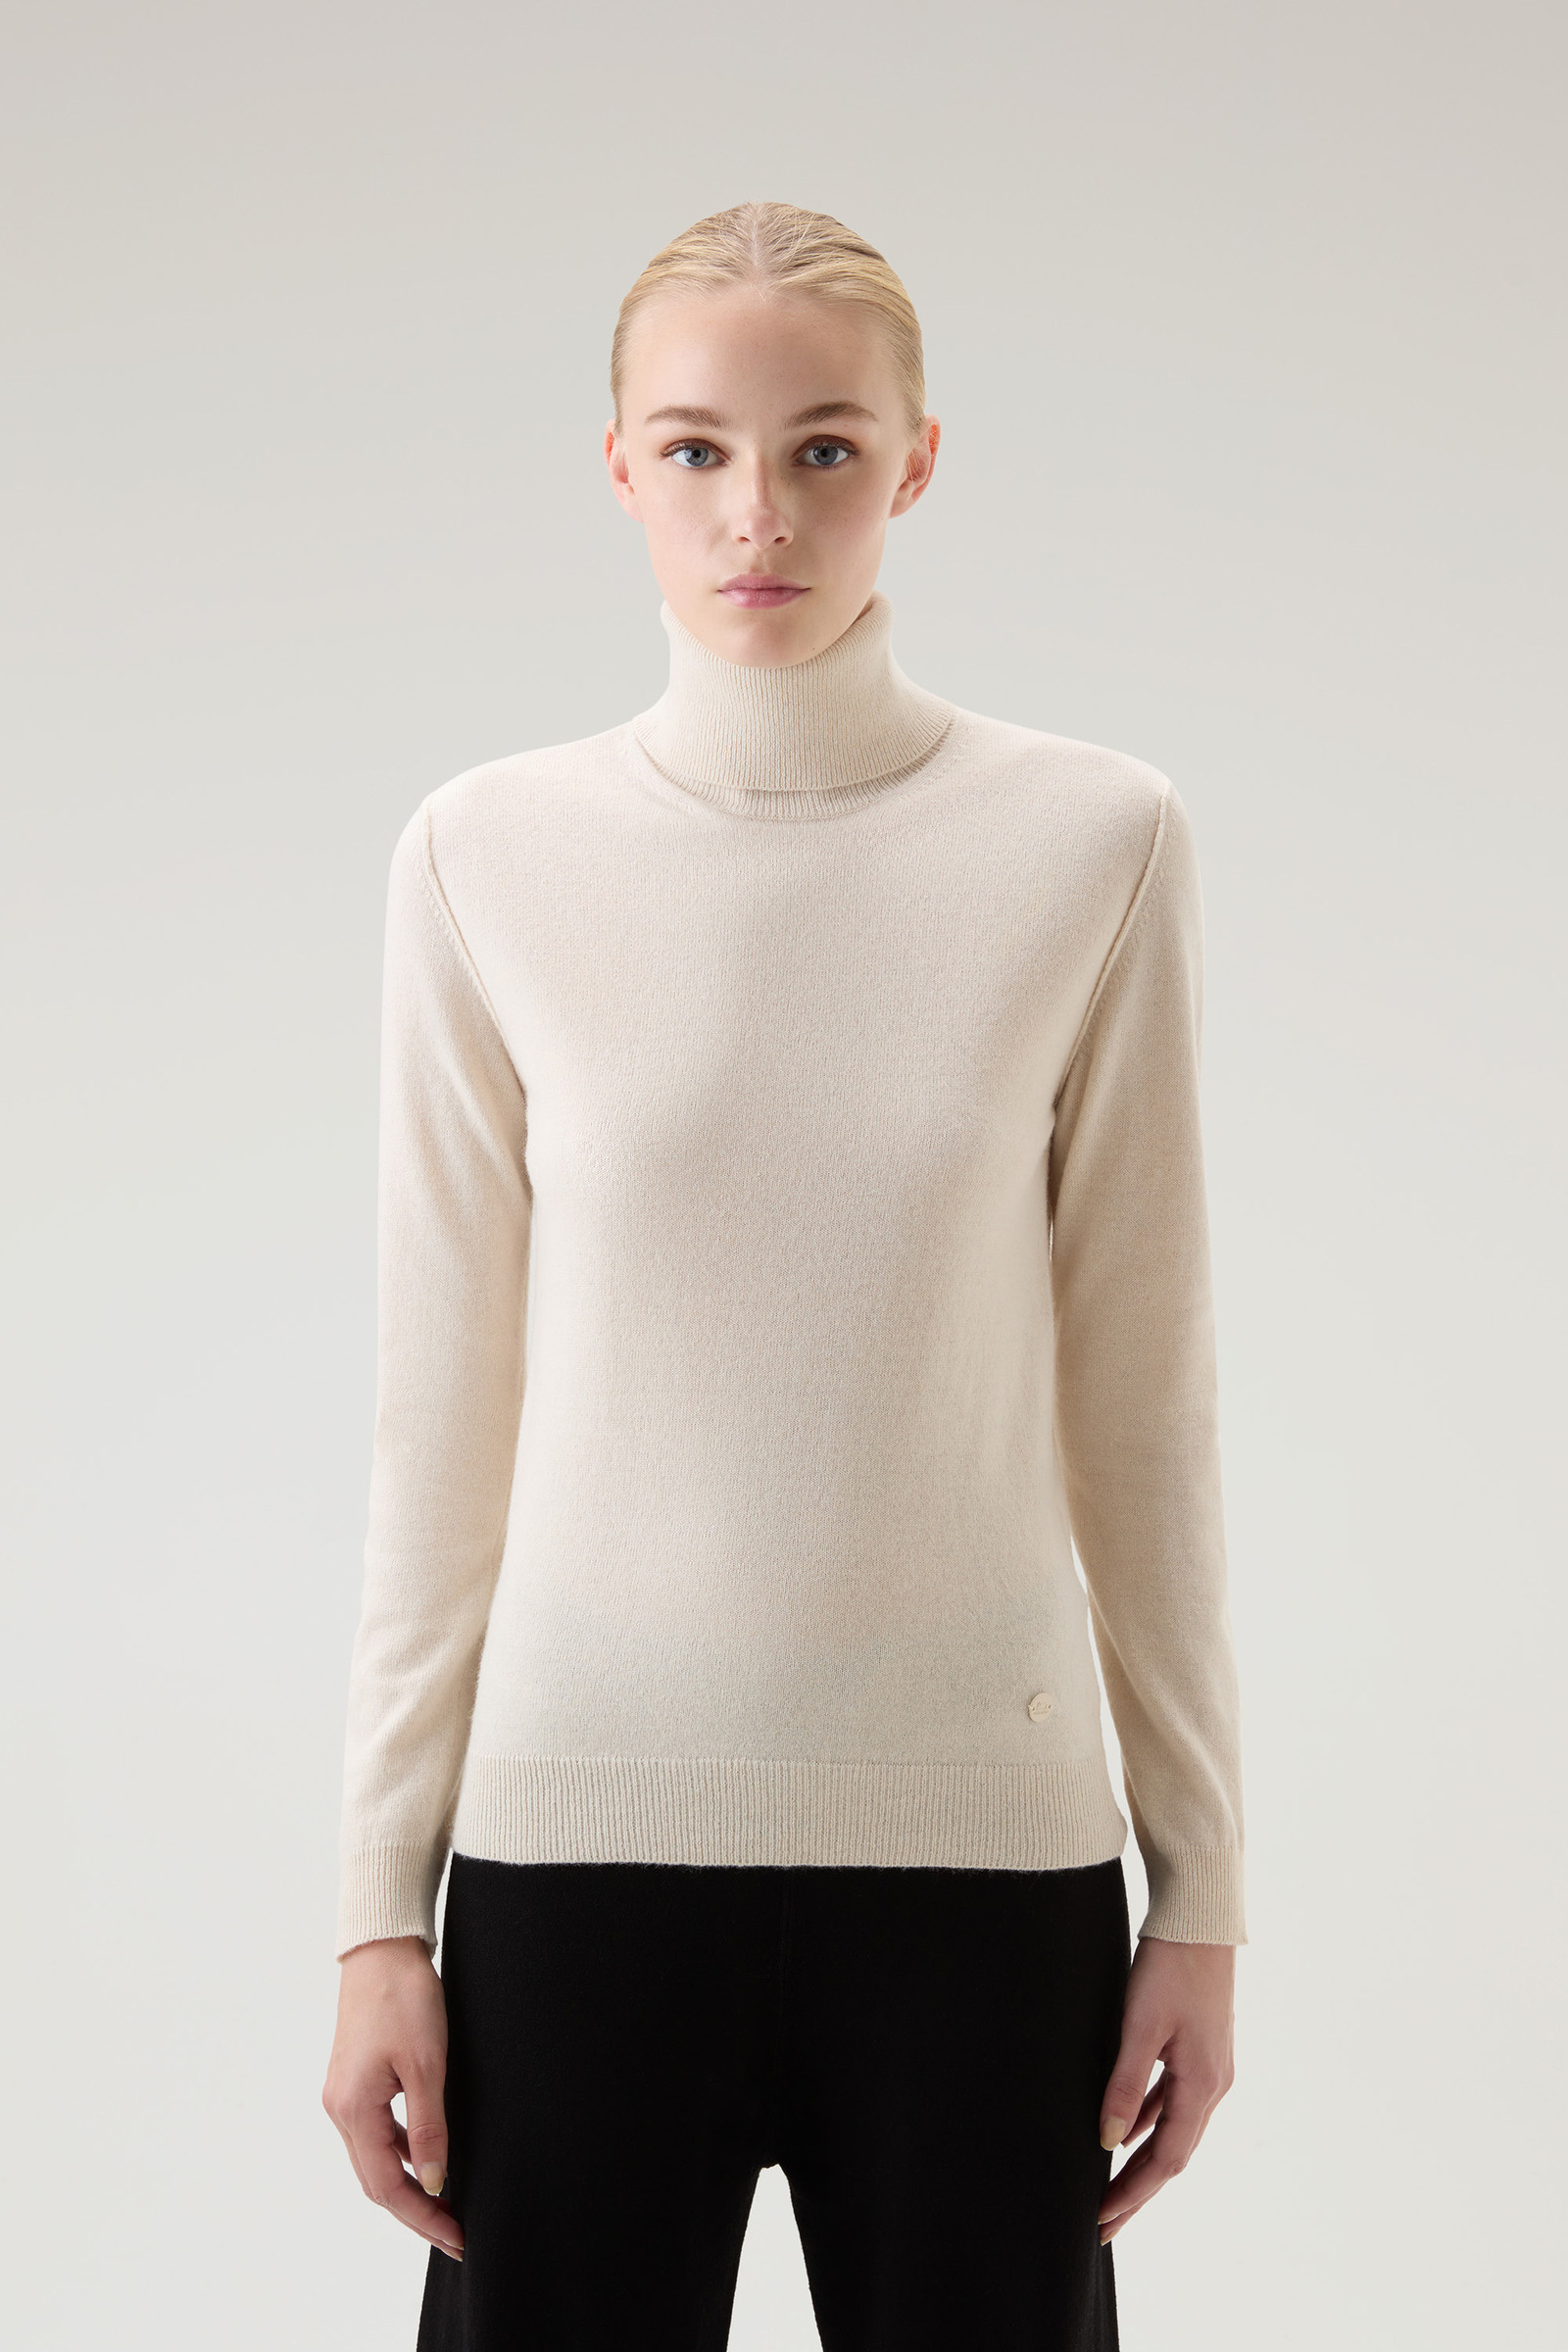 Women's Turtleneck Sweater in Wool Blend White | Woolrich USA